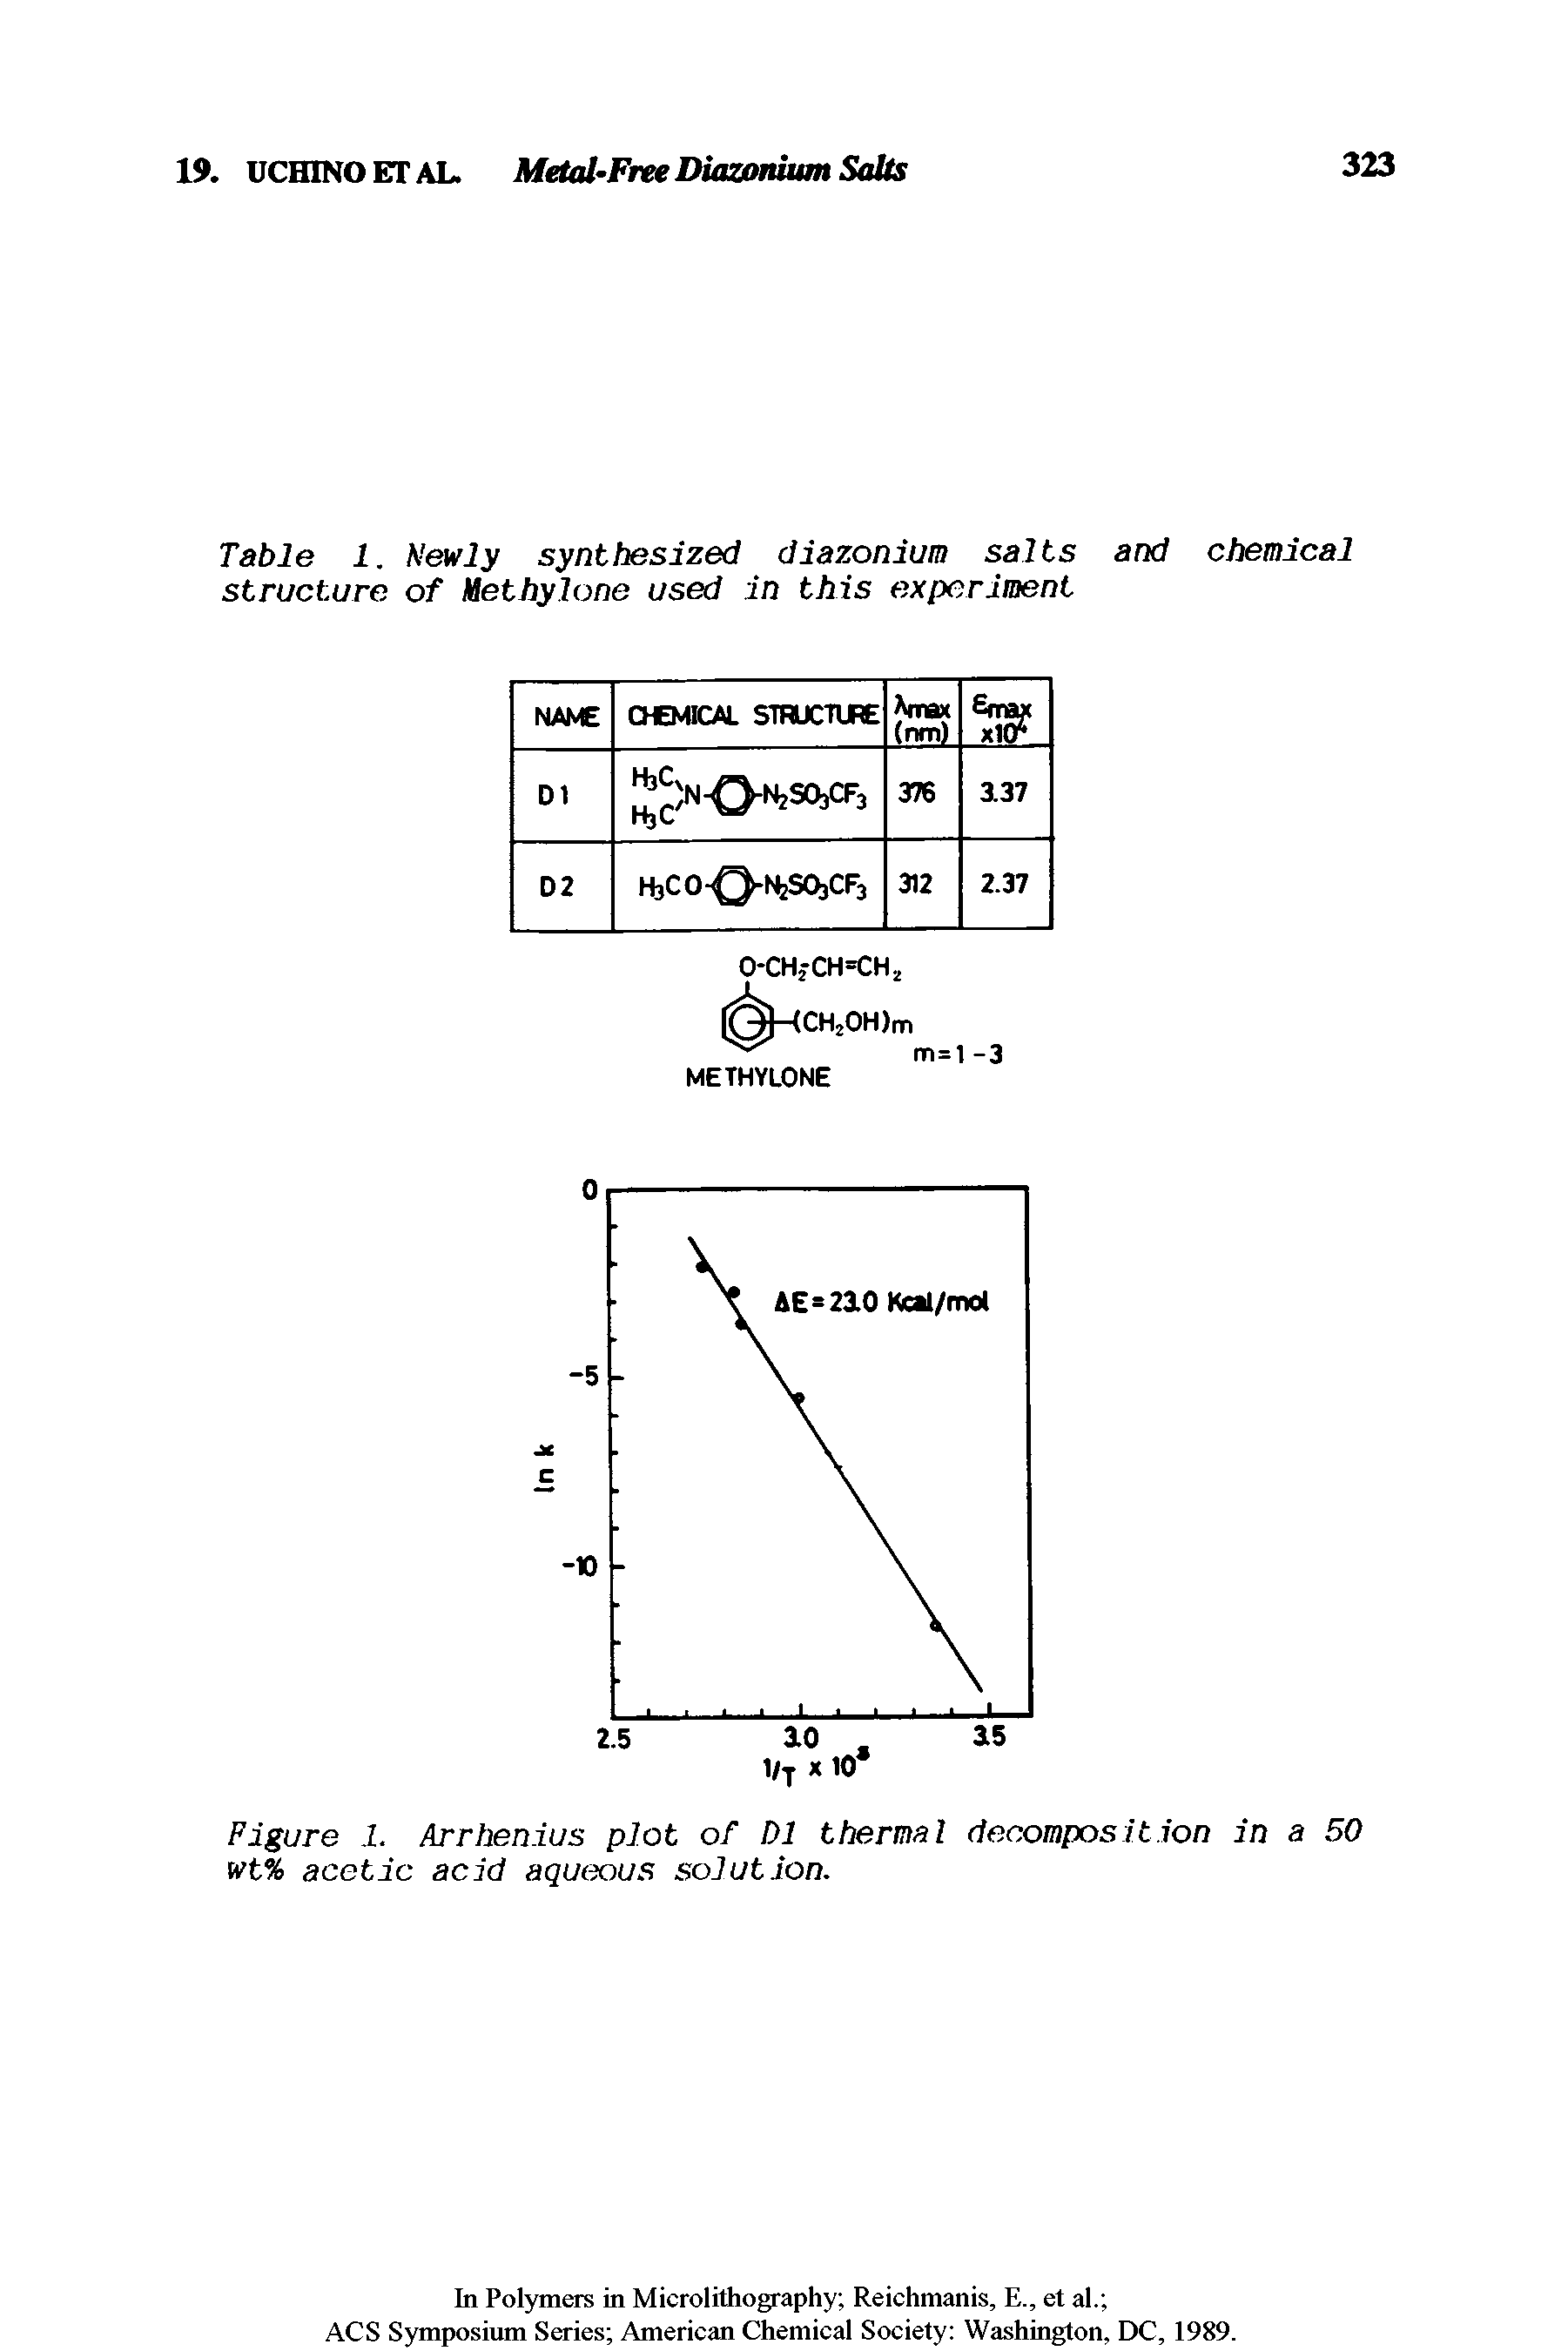 Figure 1. Arrhenius plot of D1 thermal decomposition in a 50 wt% acetic acid aqueous solution.